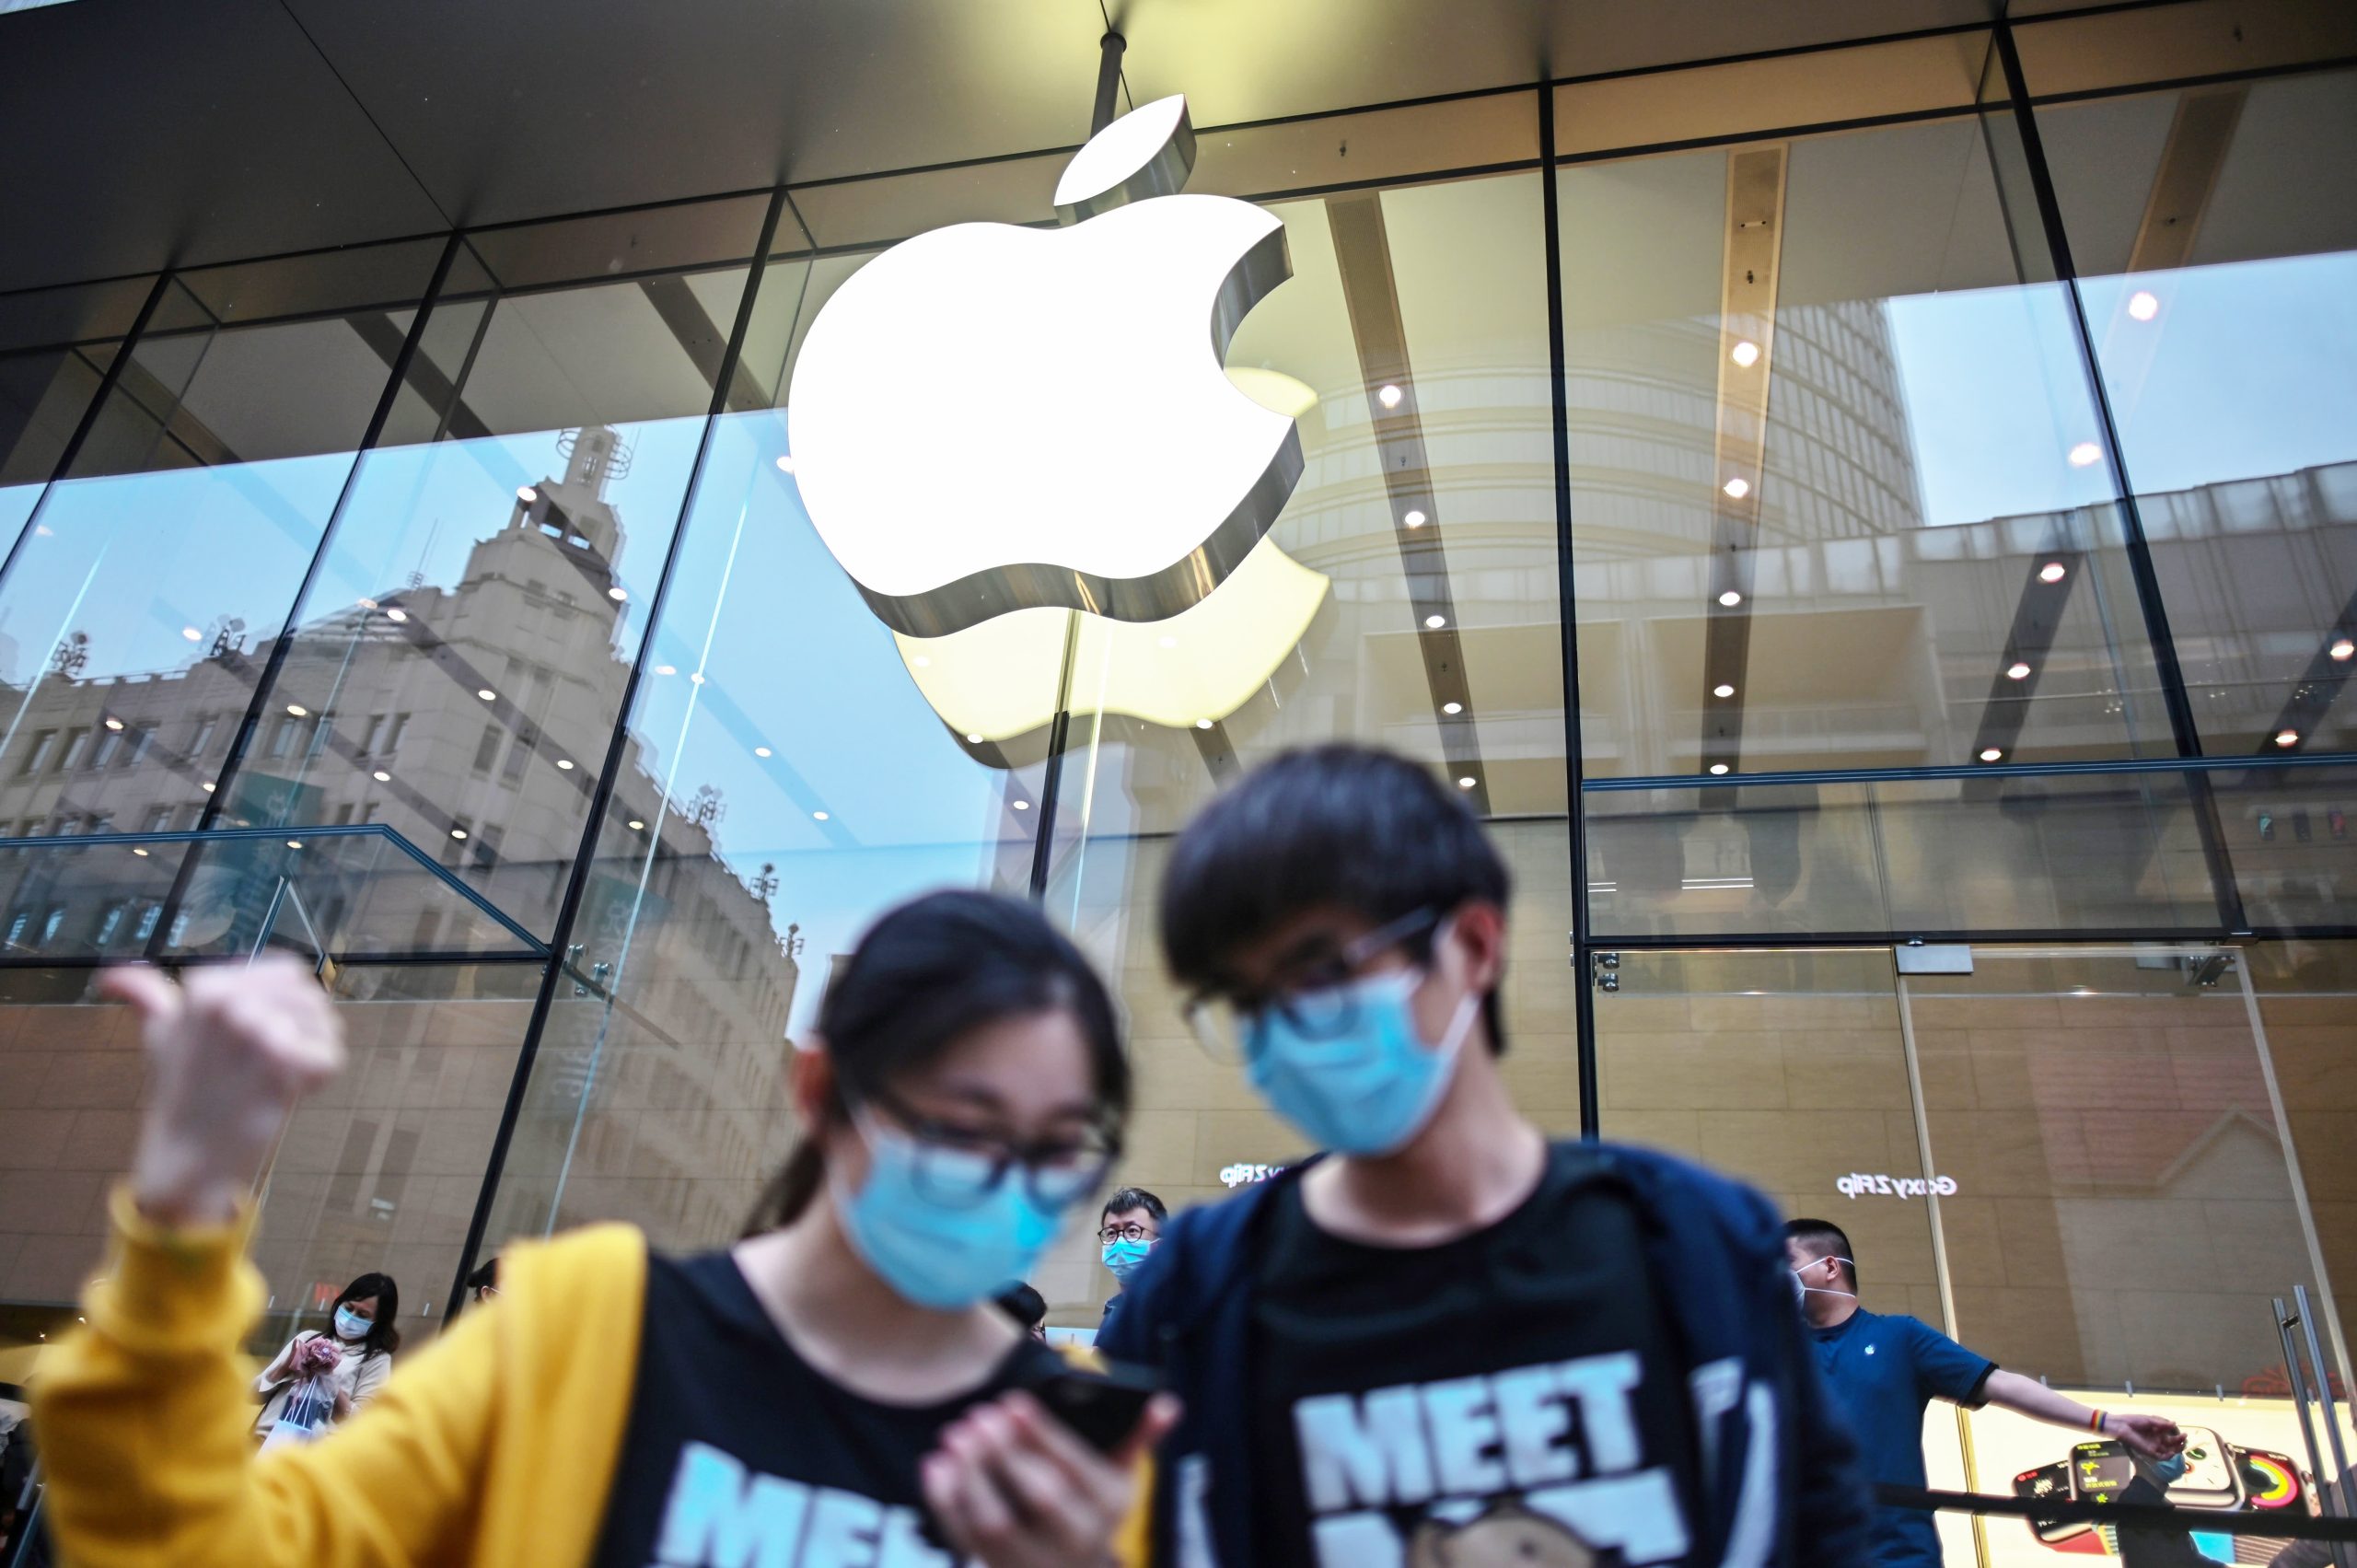 Uit het bericht blijkt dat de Saudi Electricity Company de poging van Apple om het voorstel van de aandeelhouder over dwangarbeid te blokkeren afwijst